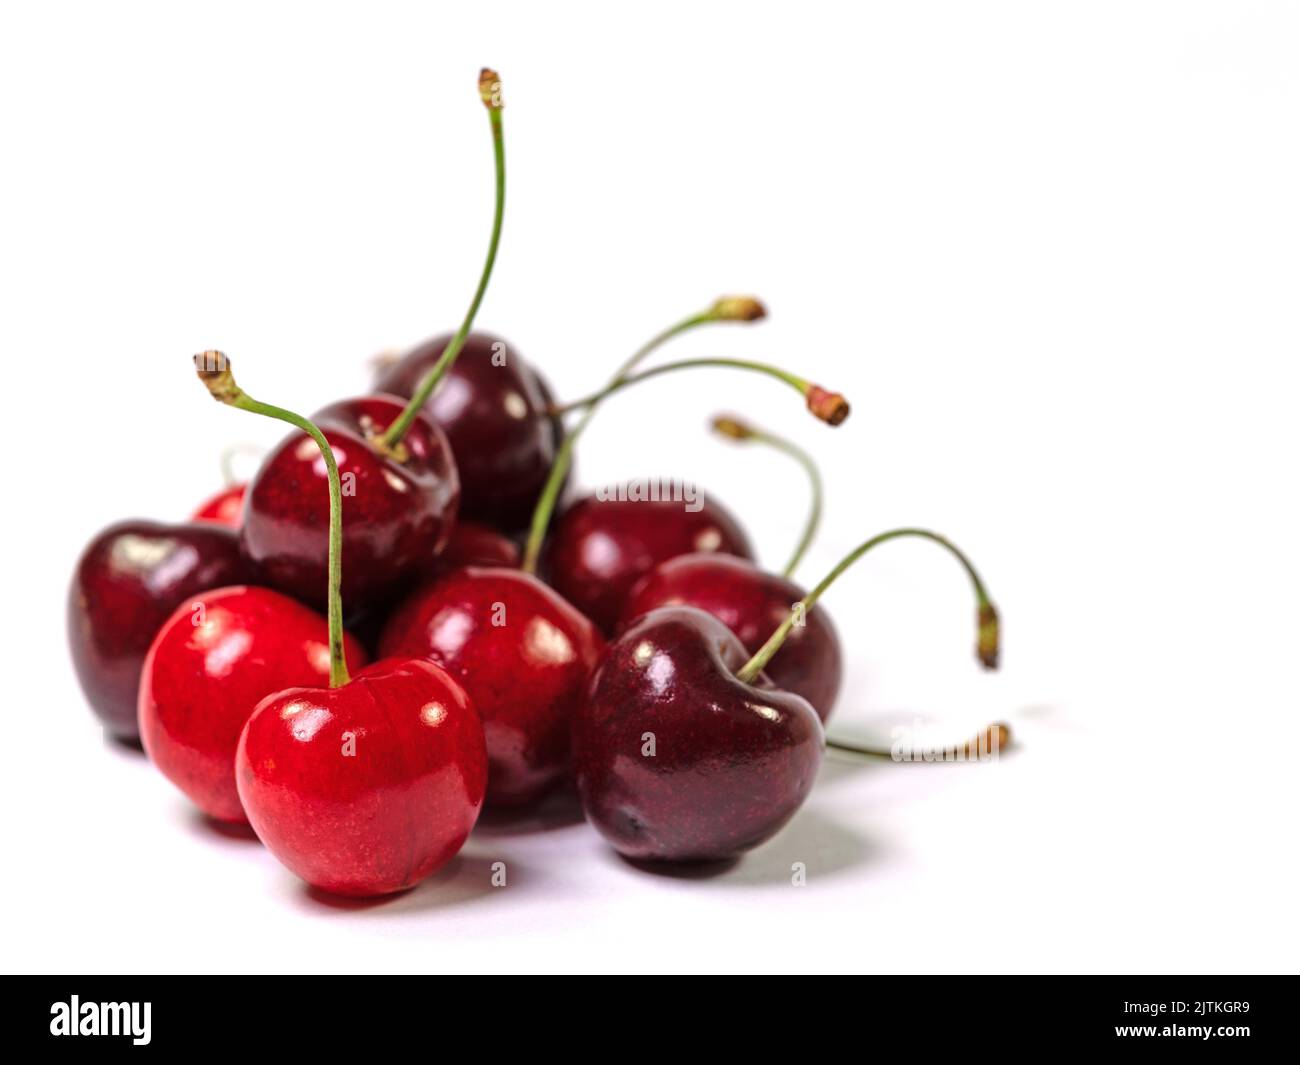 Sweet cherries,  Prunus avium, against white background Stock Photo